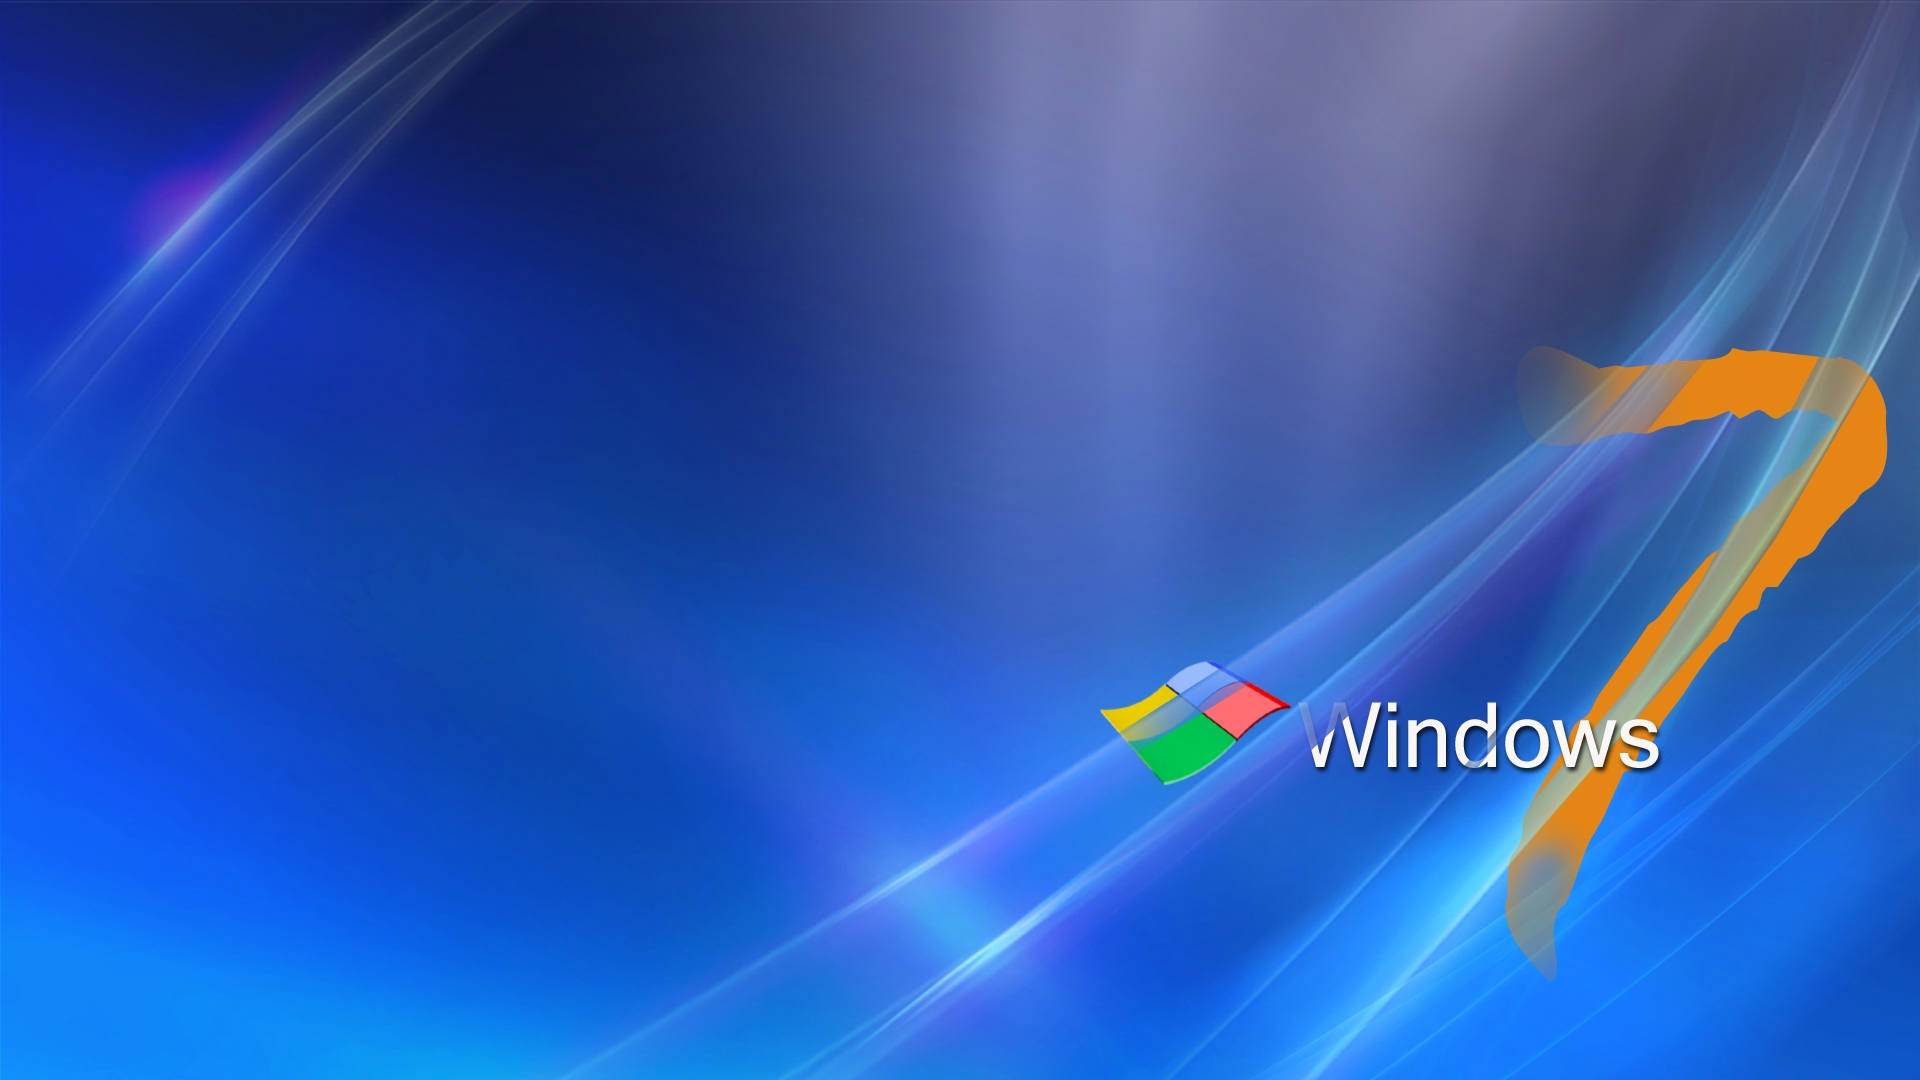 windows 7 fondos de pantalla hd,azul,ligero,tiempo de día,sistema operativo,atmósfera